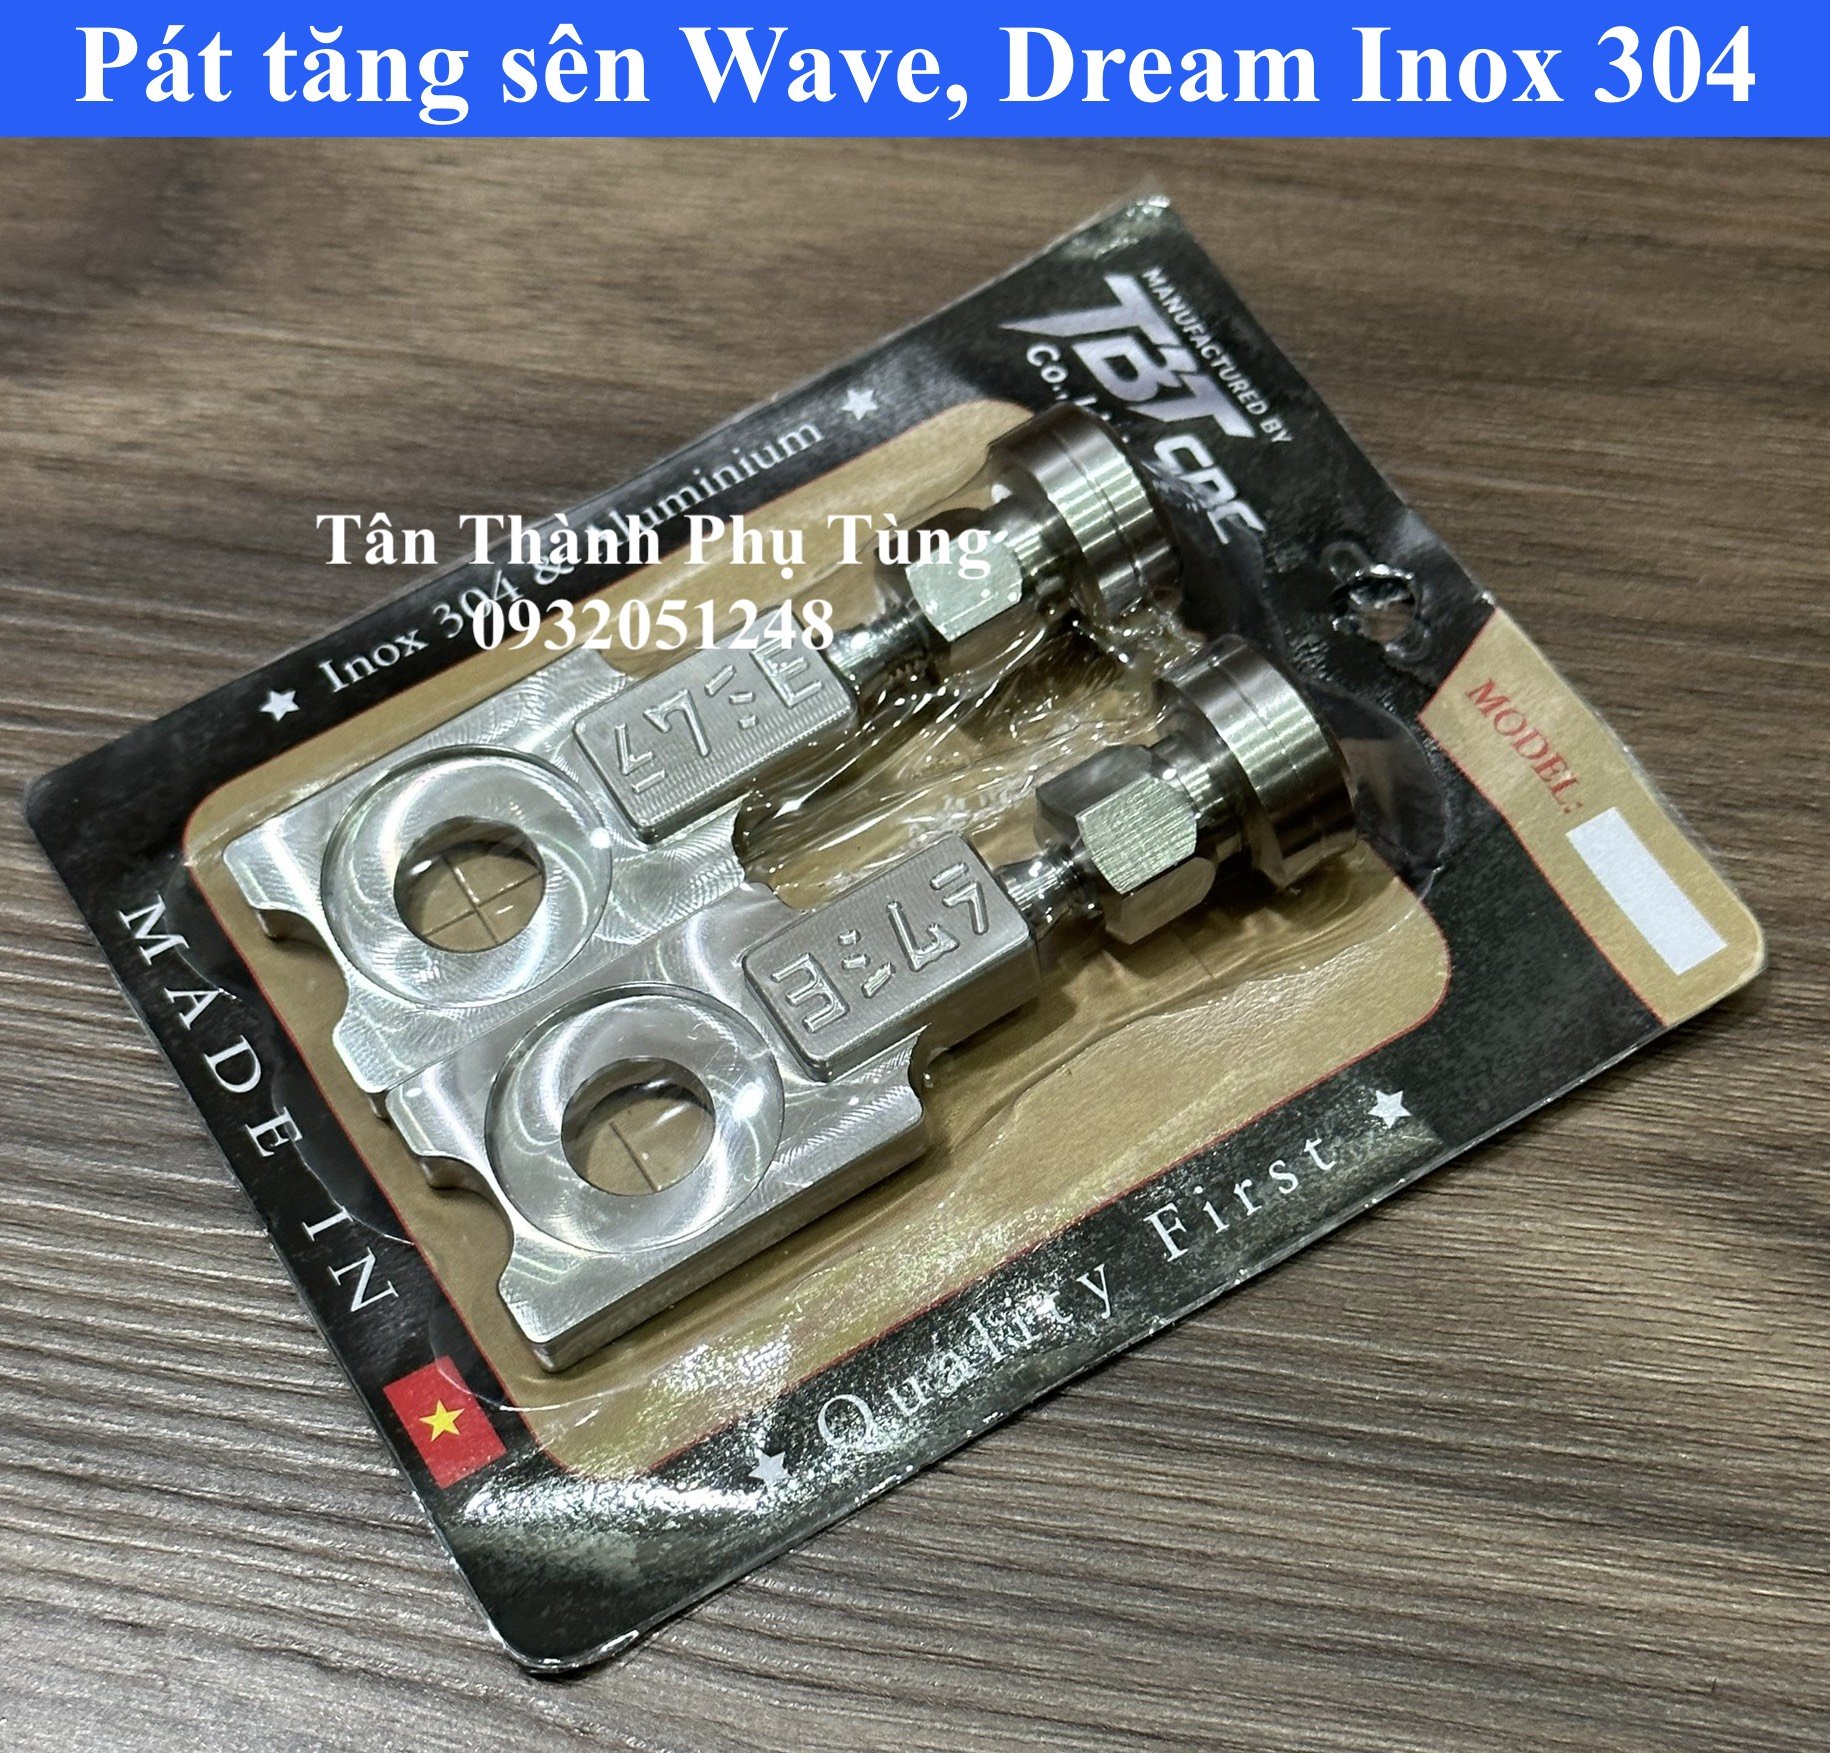 Pát, Bass tăng sên dành cho Wave, Dream Inox 304 TBT.CNC